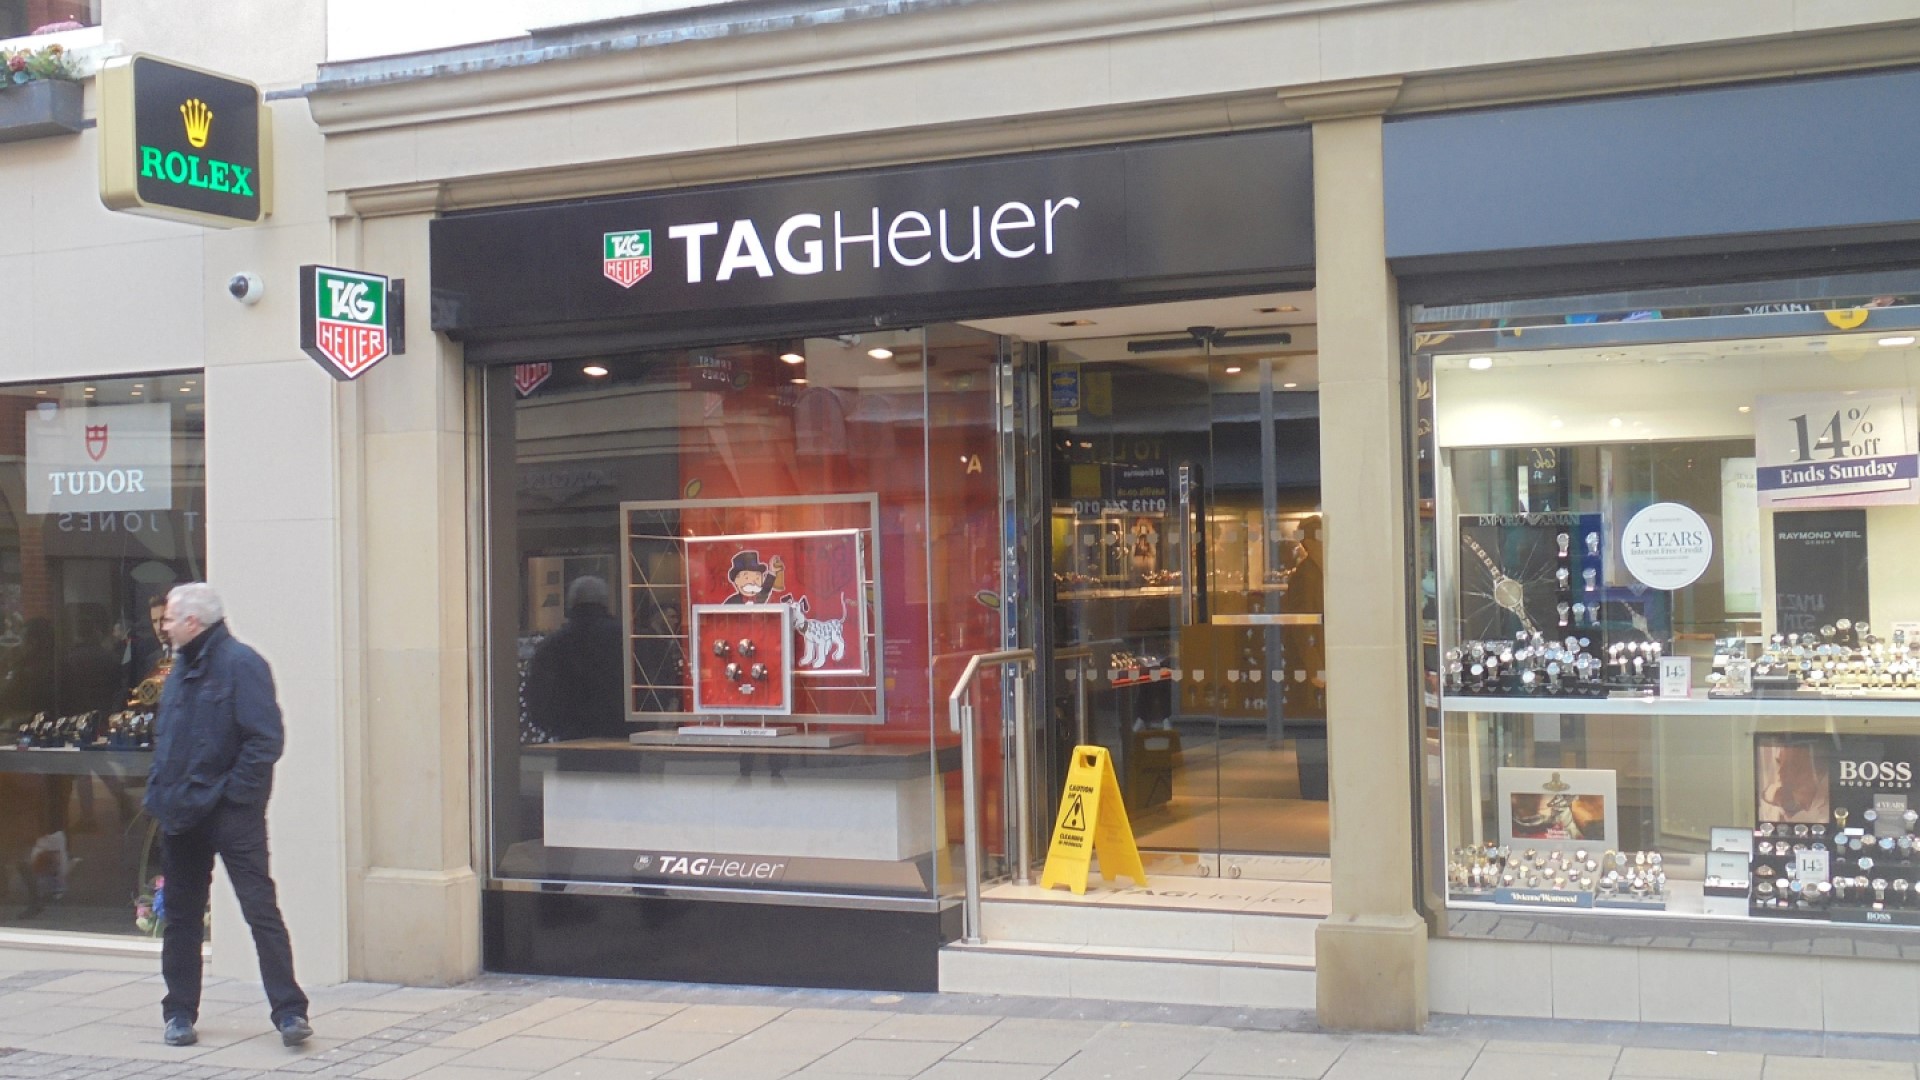 Tag Heuer ผู้ผลิตนาฬิกาสุดหรูเปิดรับการชำระเงินด้วยคริปโทบนเว็บไซต์ในสหรัฐฯ